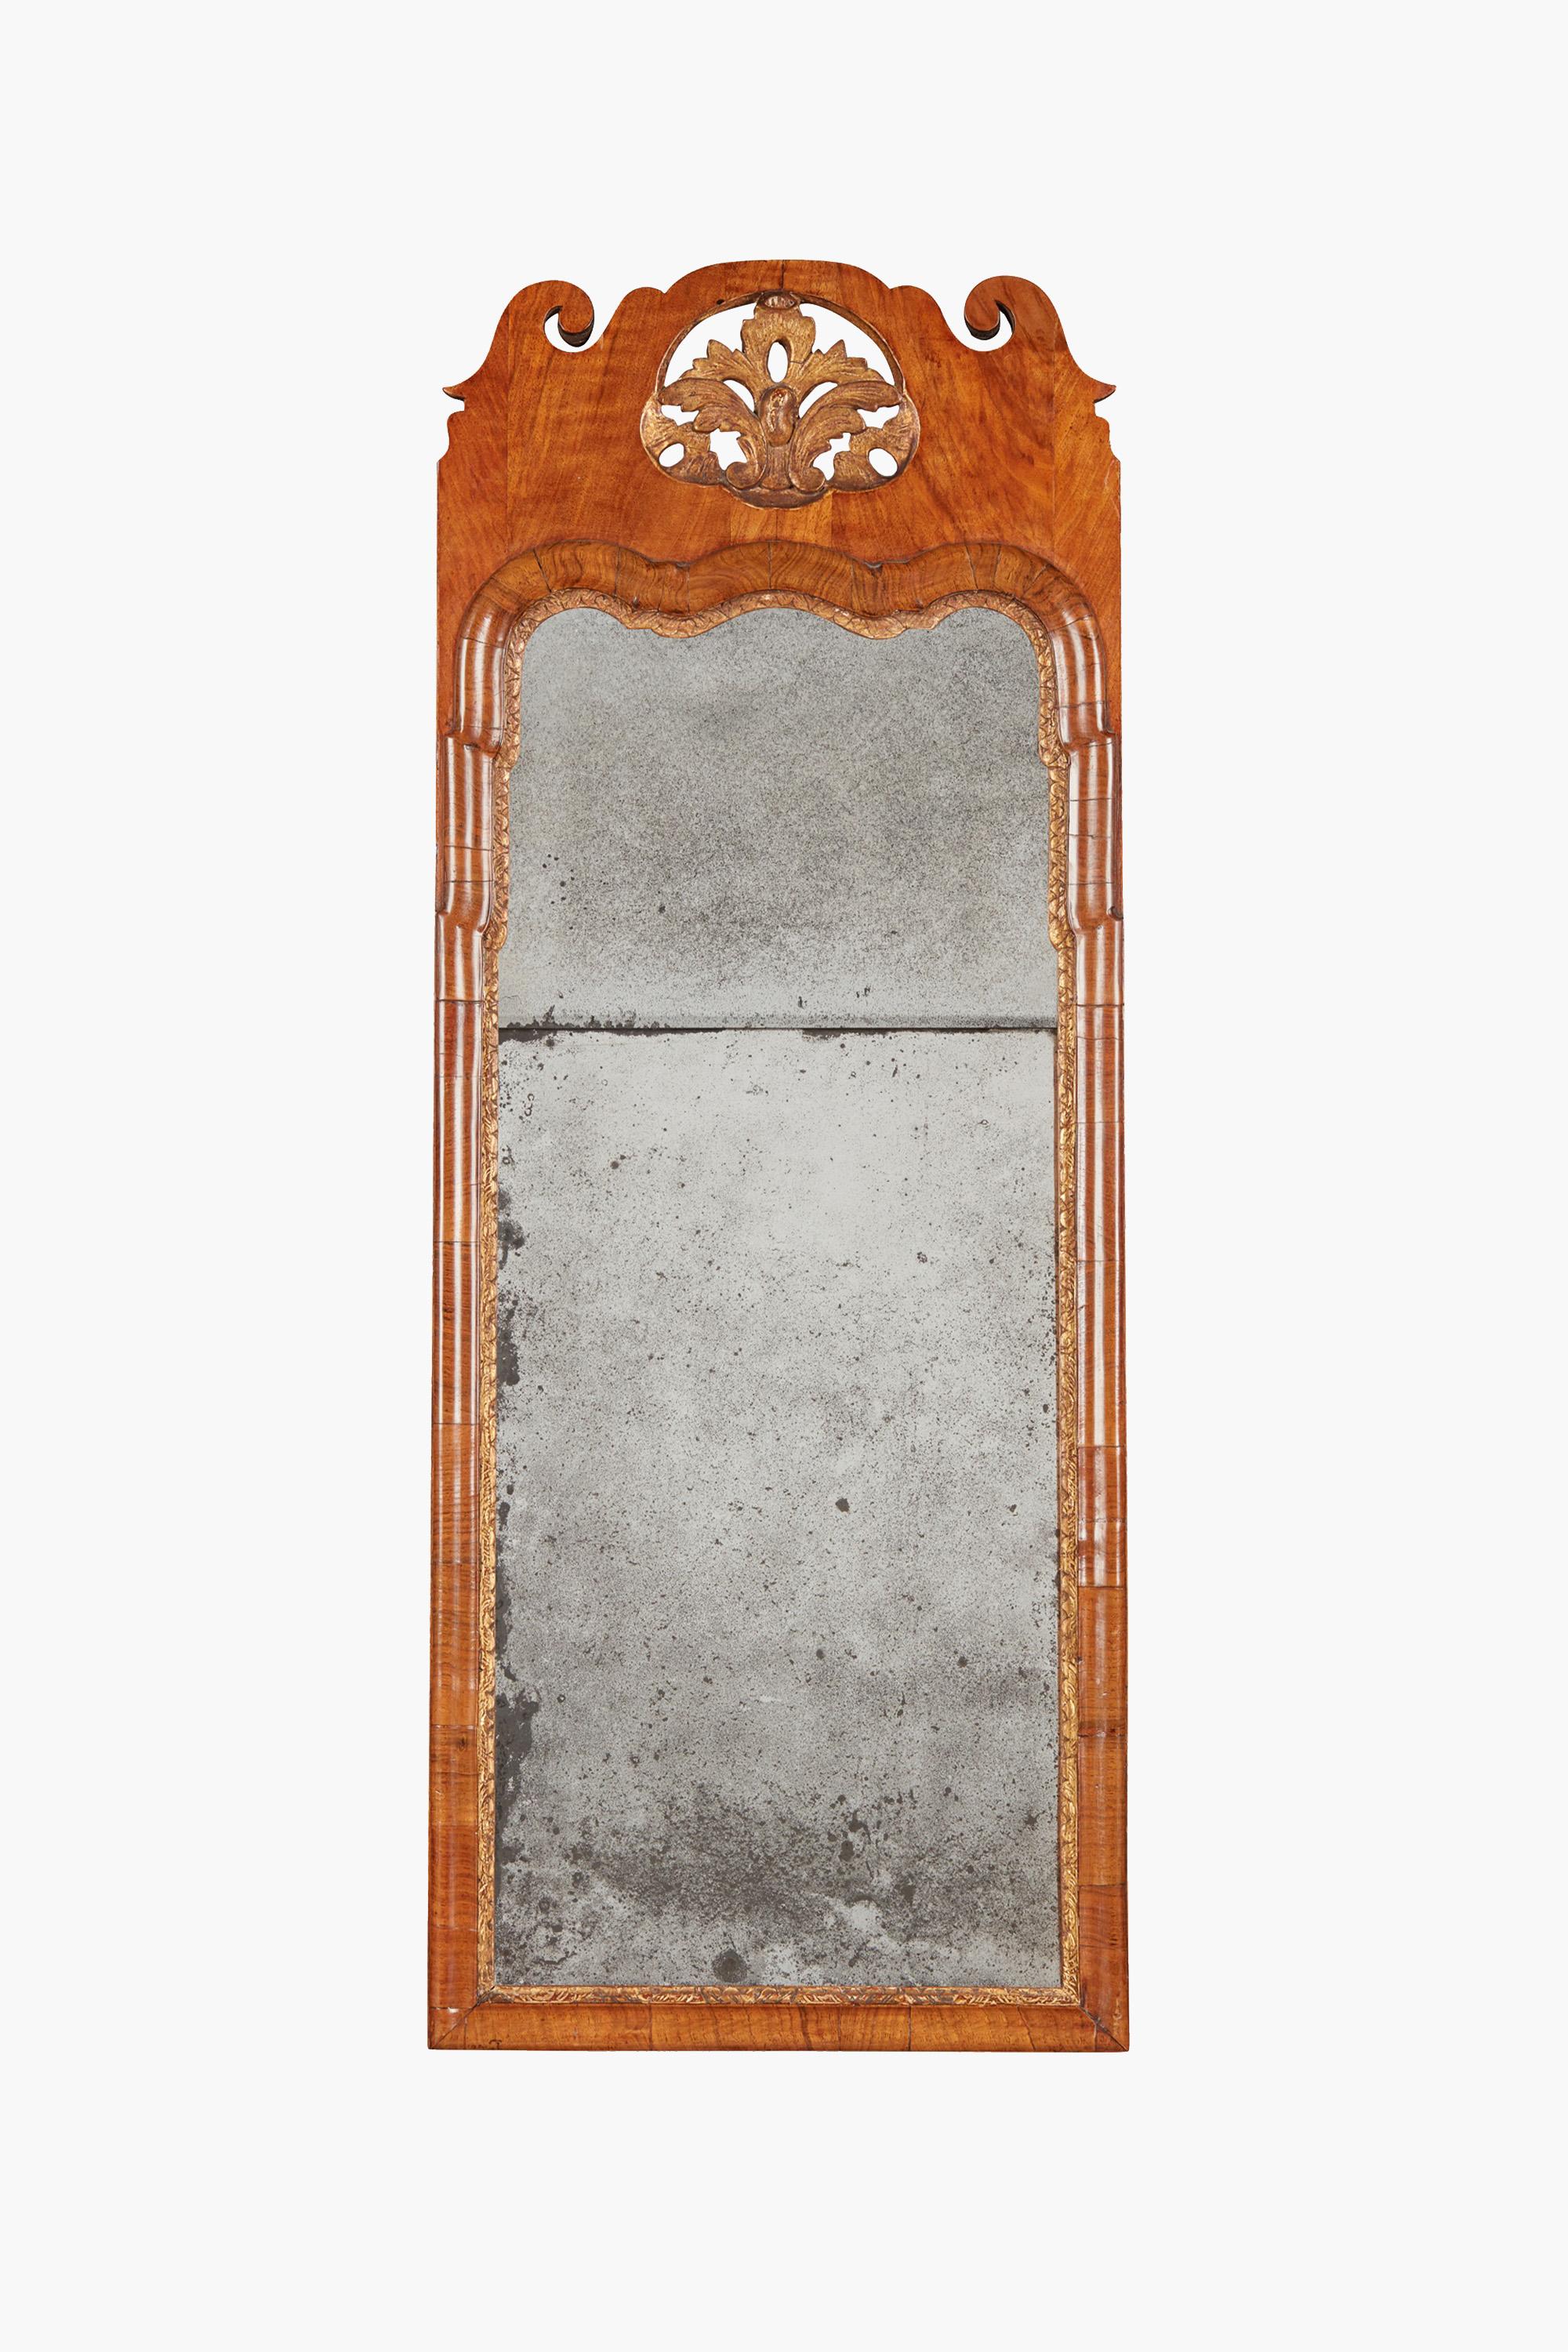 Miroir George I en noyer et parchemin doré, début du 18e siècle

La plaque de miroir divisée dans un cadre mouluré avec un engobe doré et une crête sculptée de perles et de volutes.

Dimensions : 106 x 41 cm
En très bon état d'origine. La plaque de